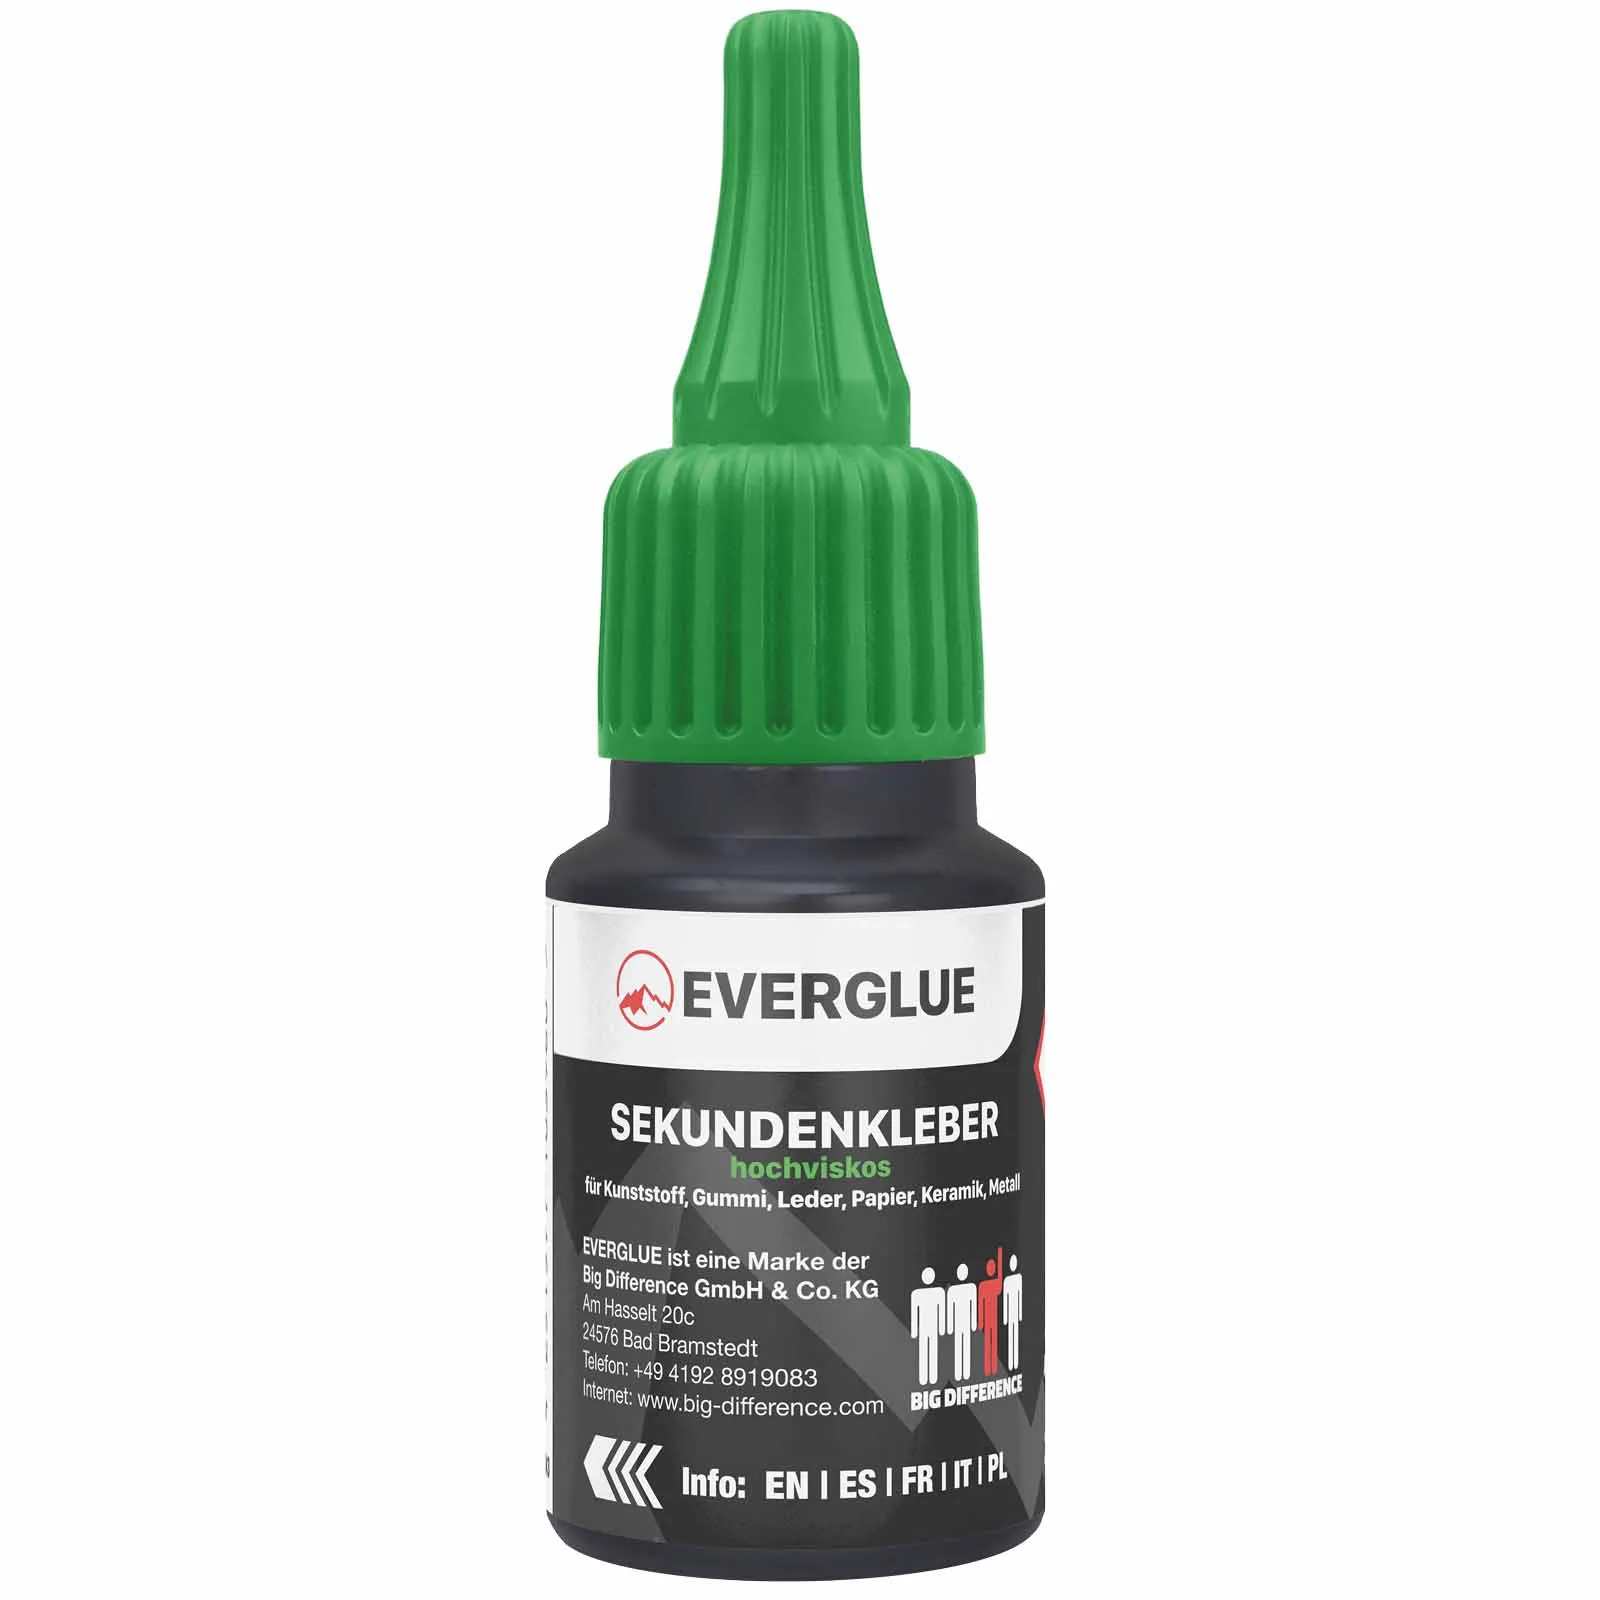 Everglue Sekundenkleber Cyanacrylat hochviskos 20g Dosierflasche (dickflüssig)